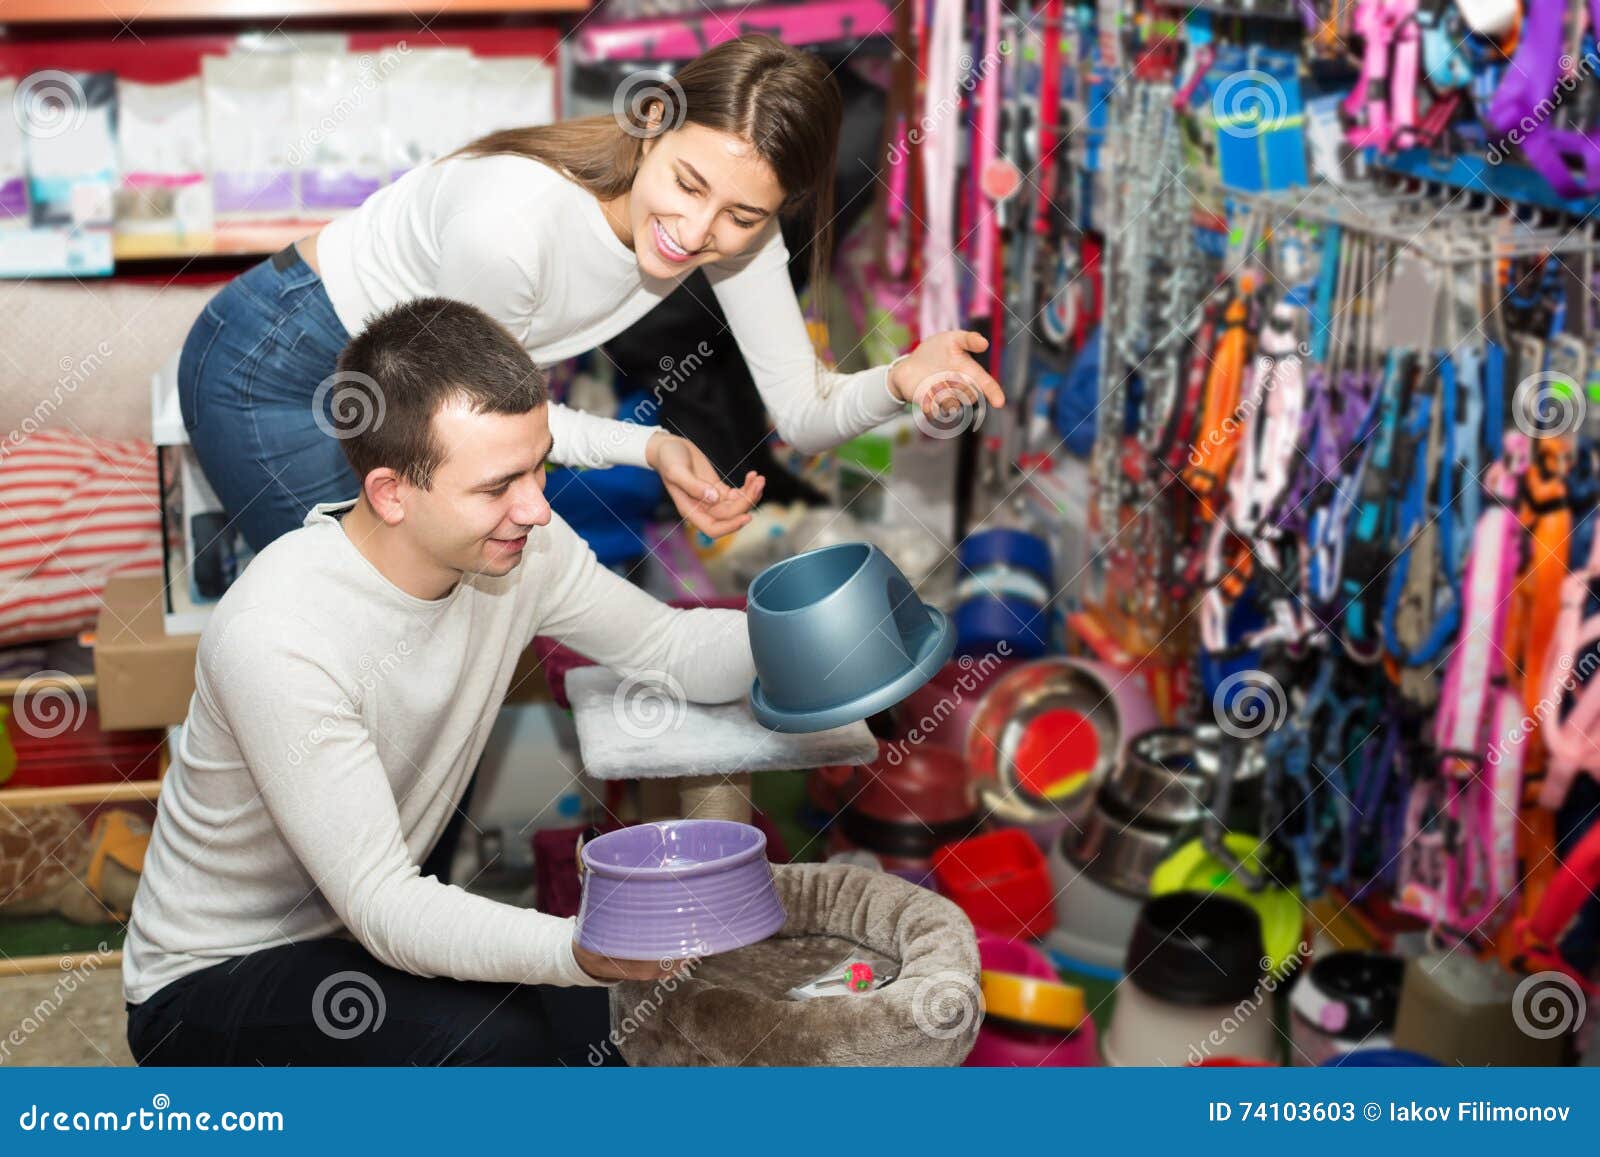 portrait of couple purchasing pet bowls in petshop